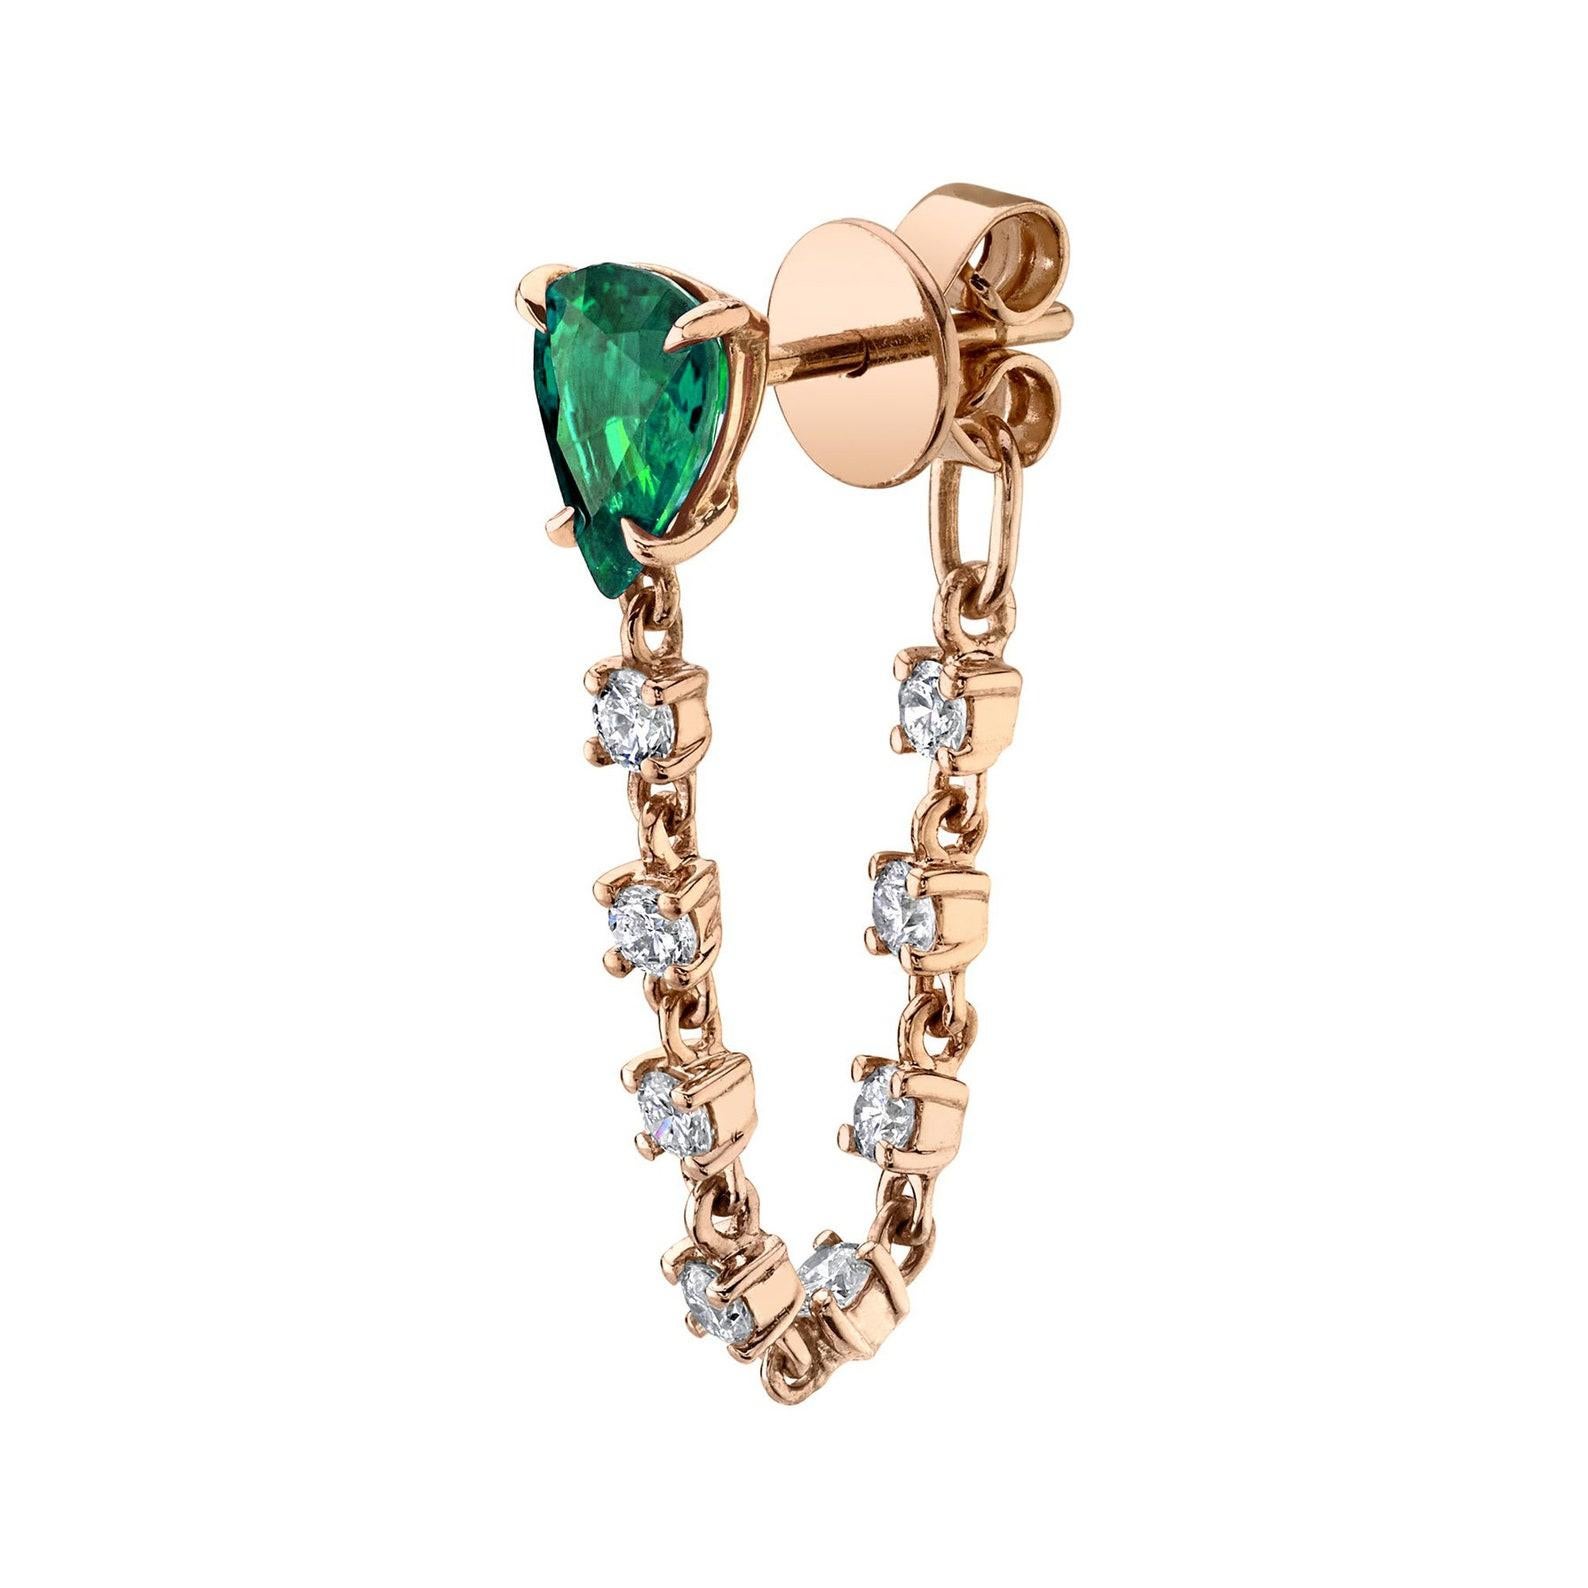 Diese Ohrringe aus 14-karätigem Gold sind von Hand mit 1,40 Karat Smaragd und 0,50 Karat funkelnden Diamanten besetzt. Erhältlich in Rosé-, Gelb- und Weißgold. Wird als Paar geliefert, kann aber auch als einzelner Ohrring gekauft werden.

FOLLOW